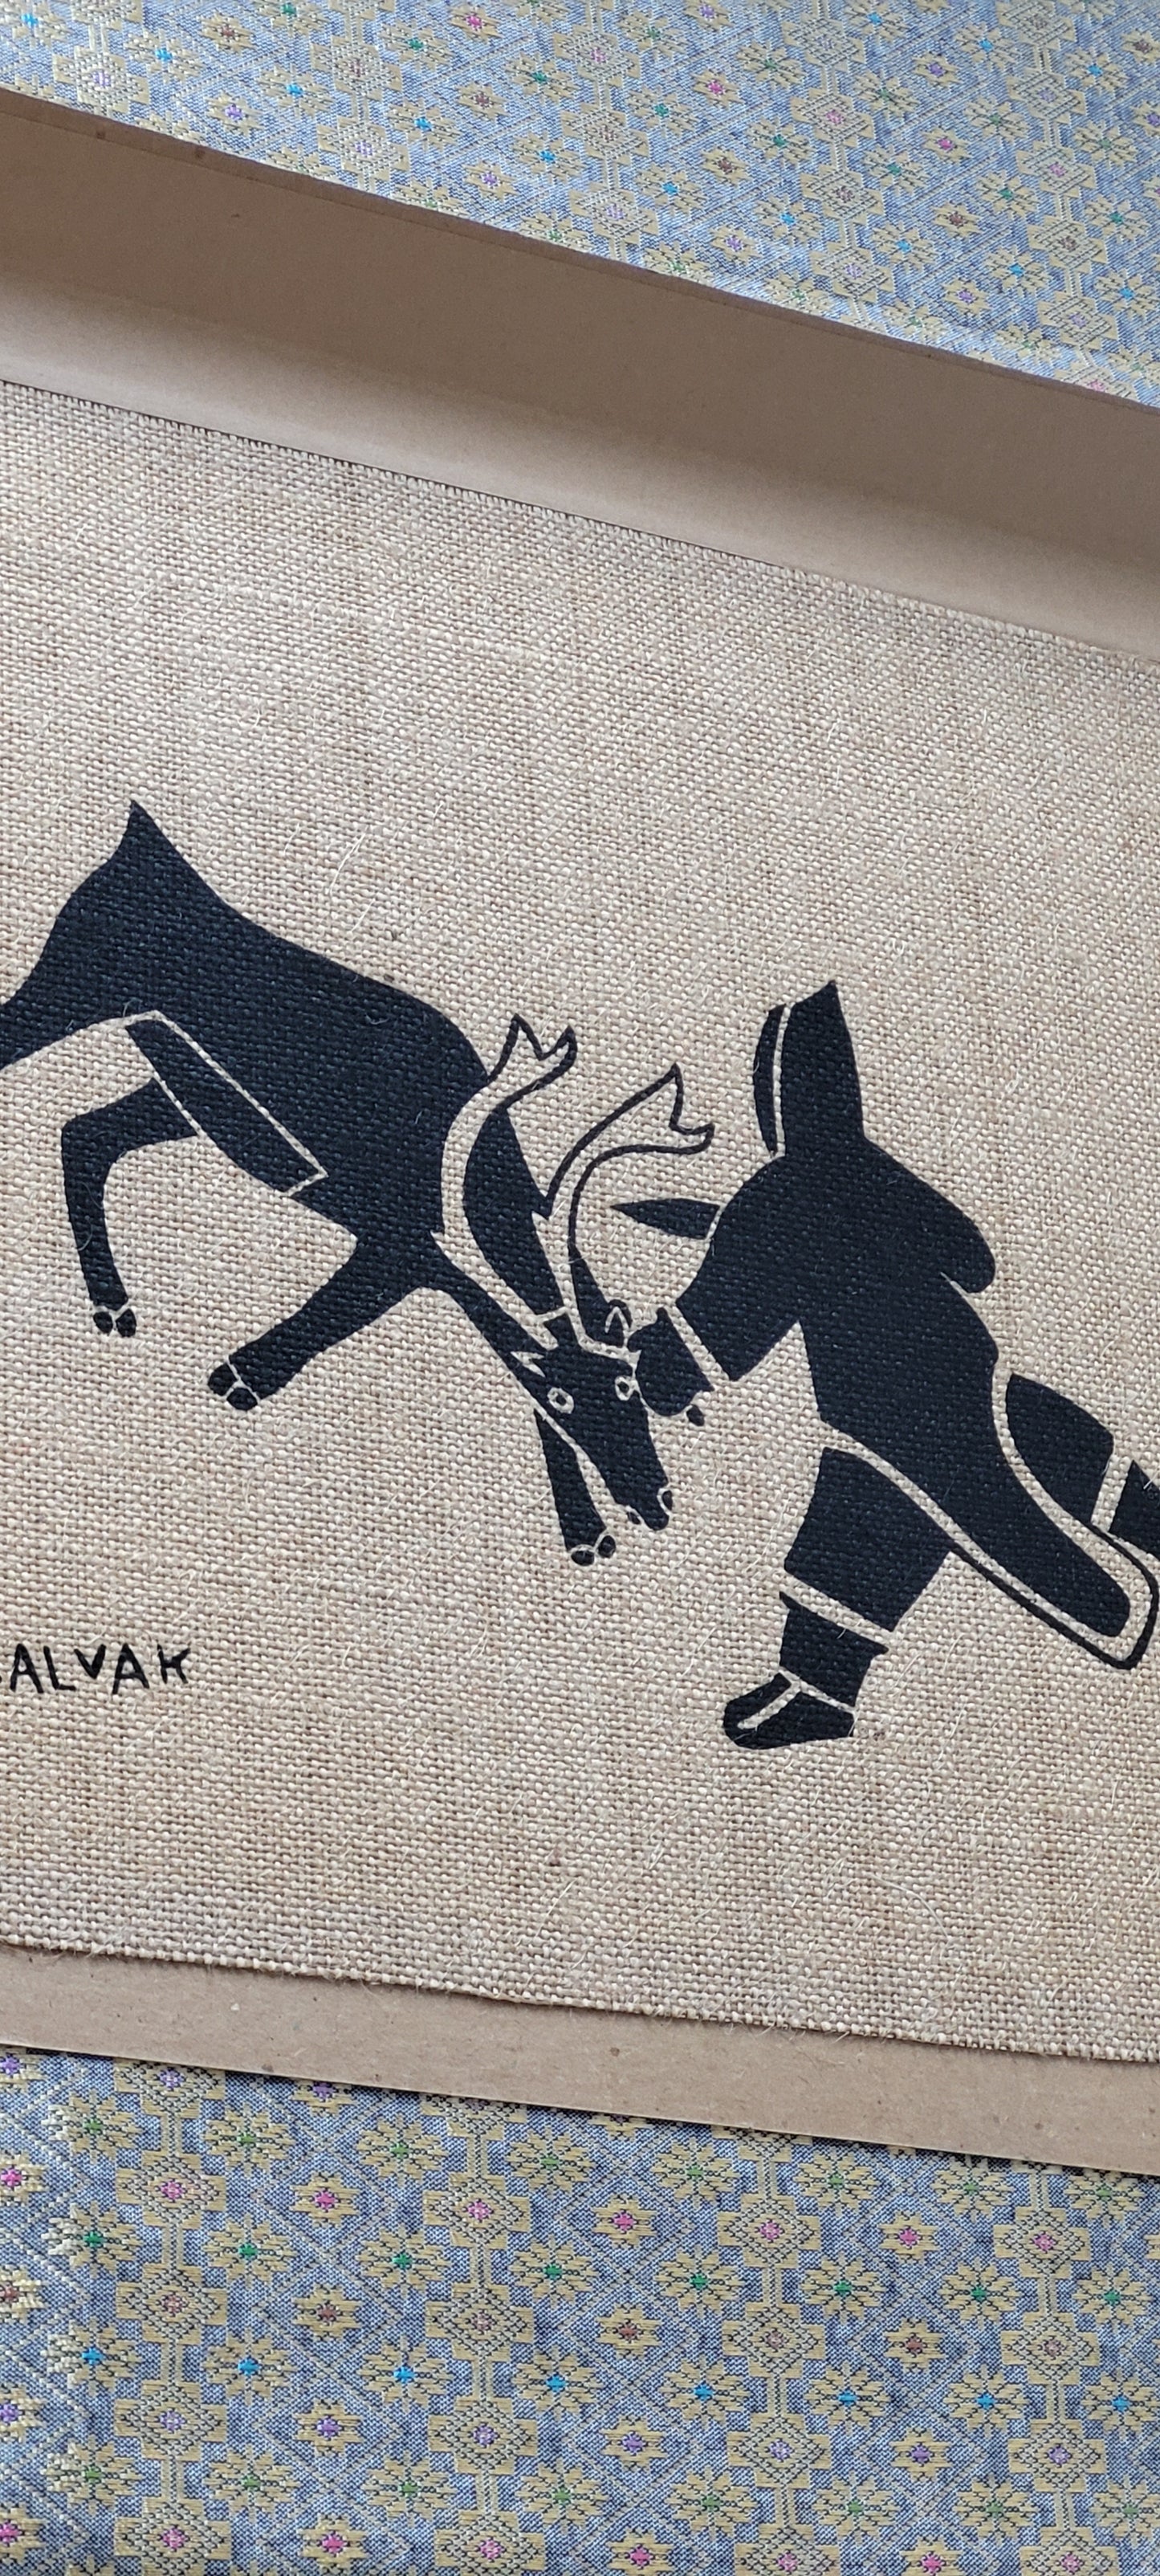 Helen Kalvak "The Hunt" 70s Print Holman North West Territories